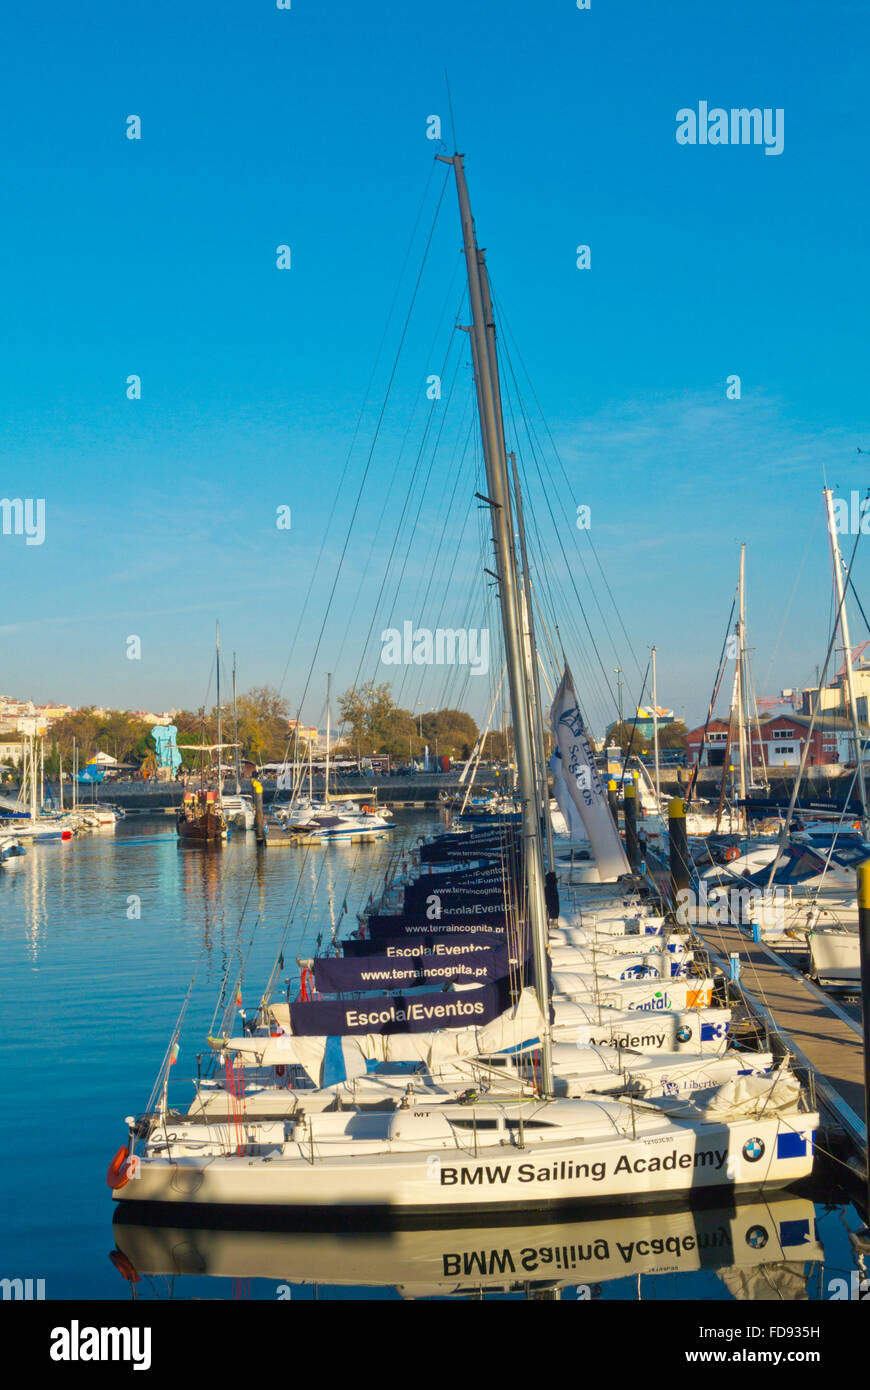 BMW Sailing Academy boats, Doca de Santo Amaro, Doca de Alcantara, harbour,  Lisbon, Portugal Stock Photo - Alamy